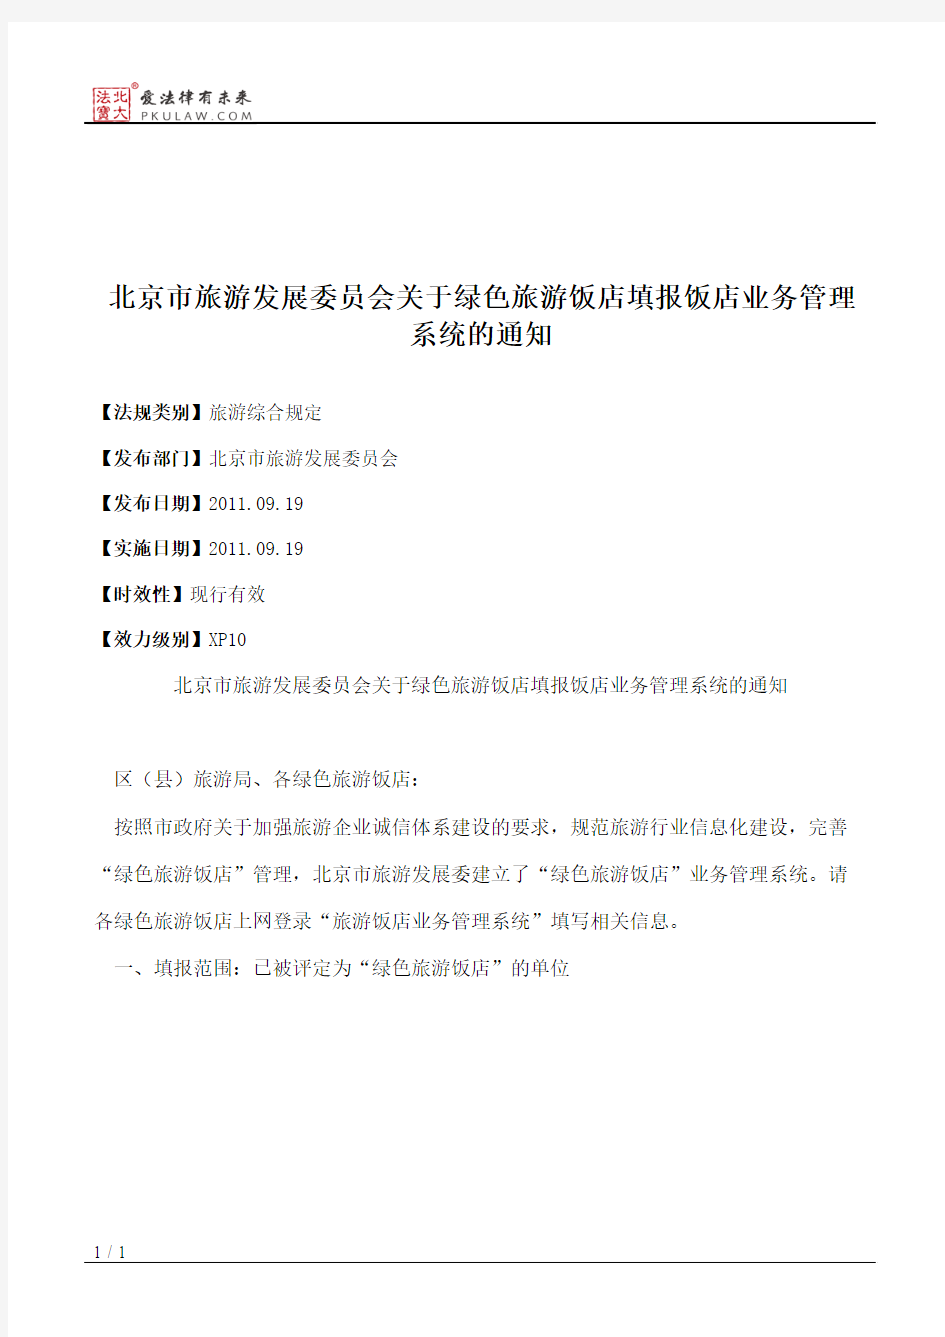 北京市旅游发展委员会关于绿色旅游饭店填报饭店业务管理系统的通知